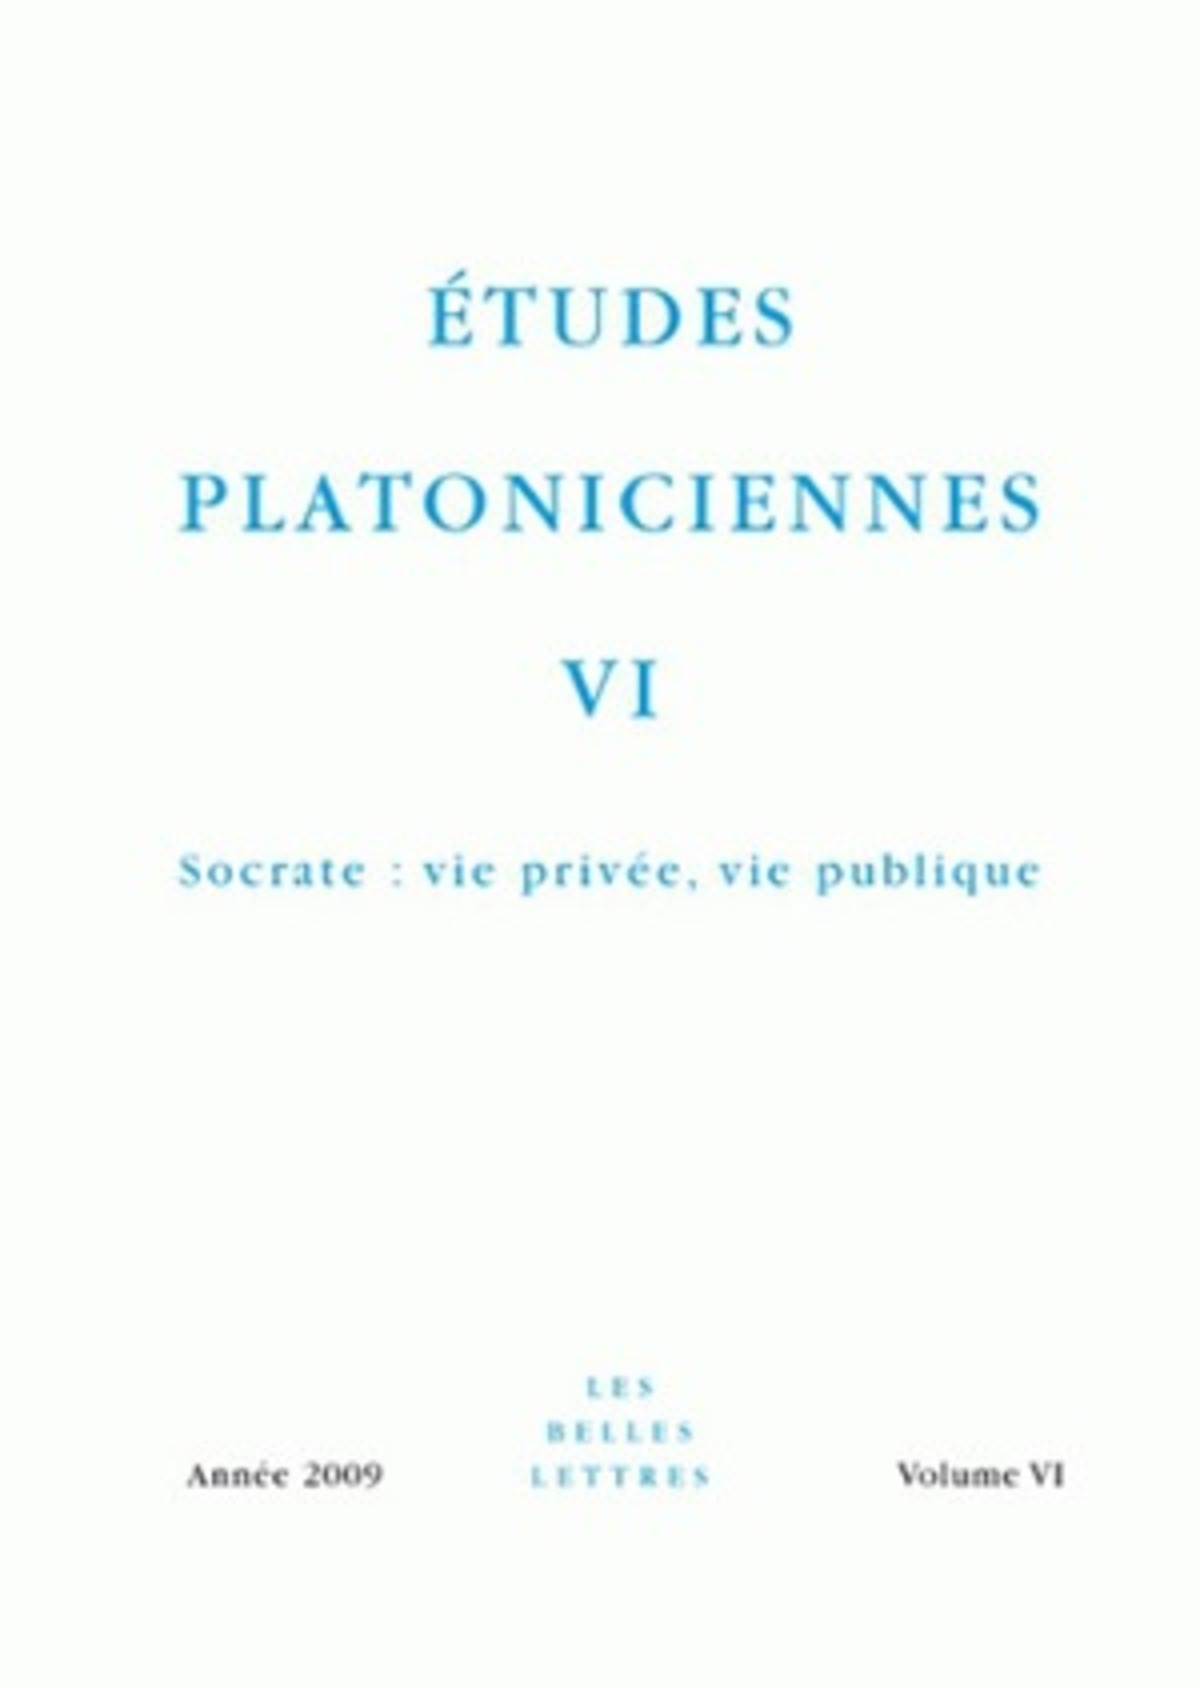 Études platoniciennes VI